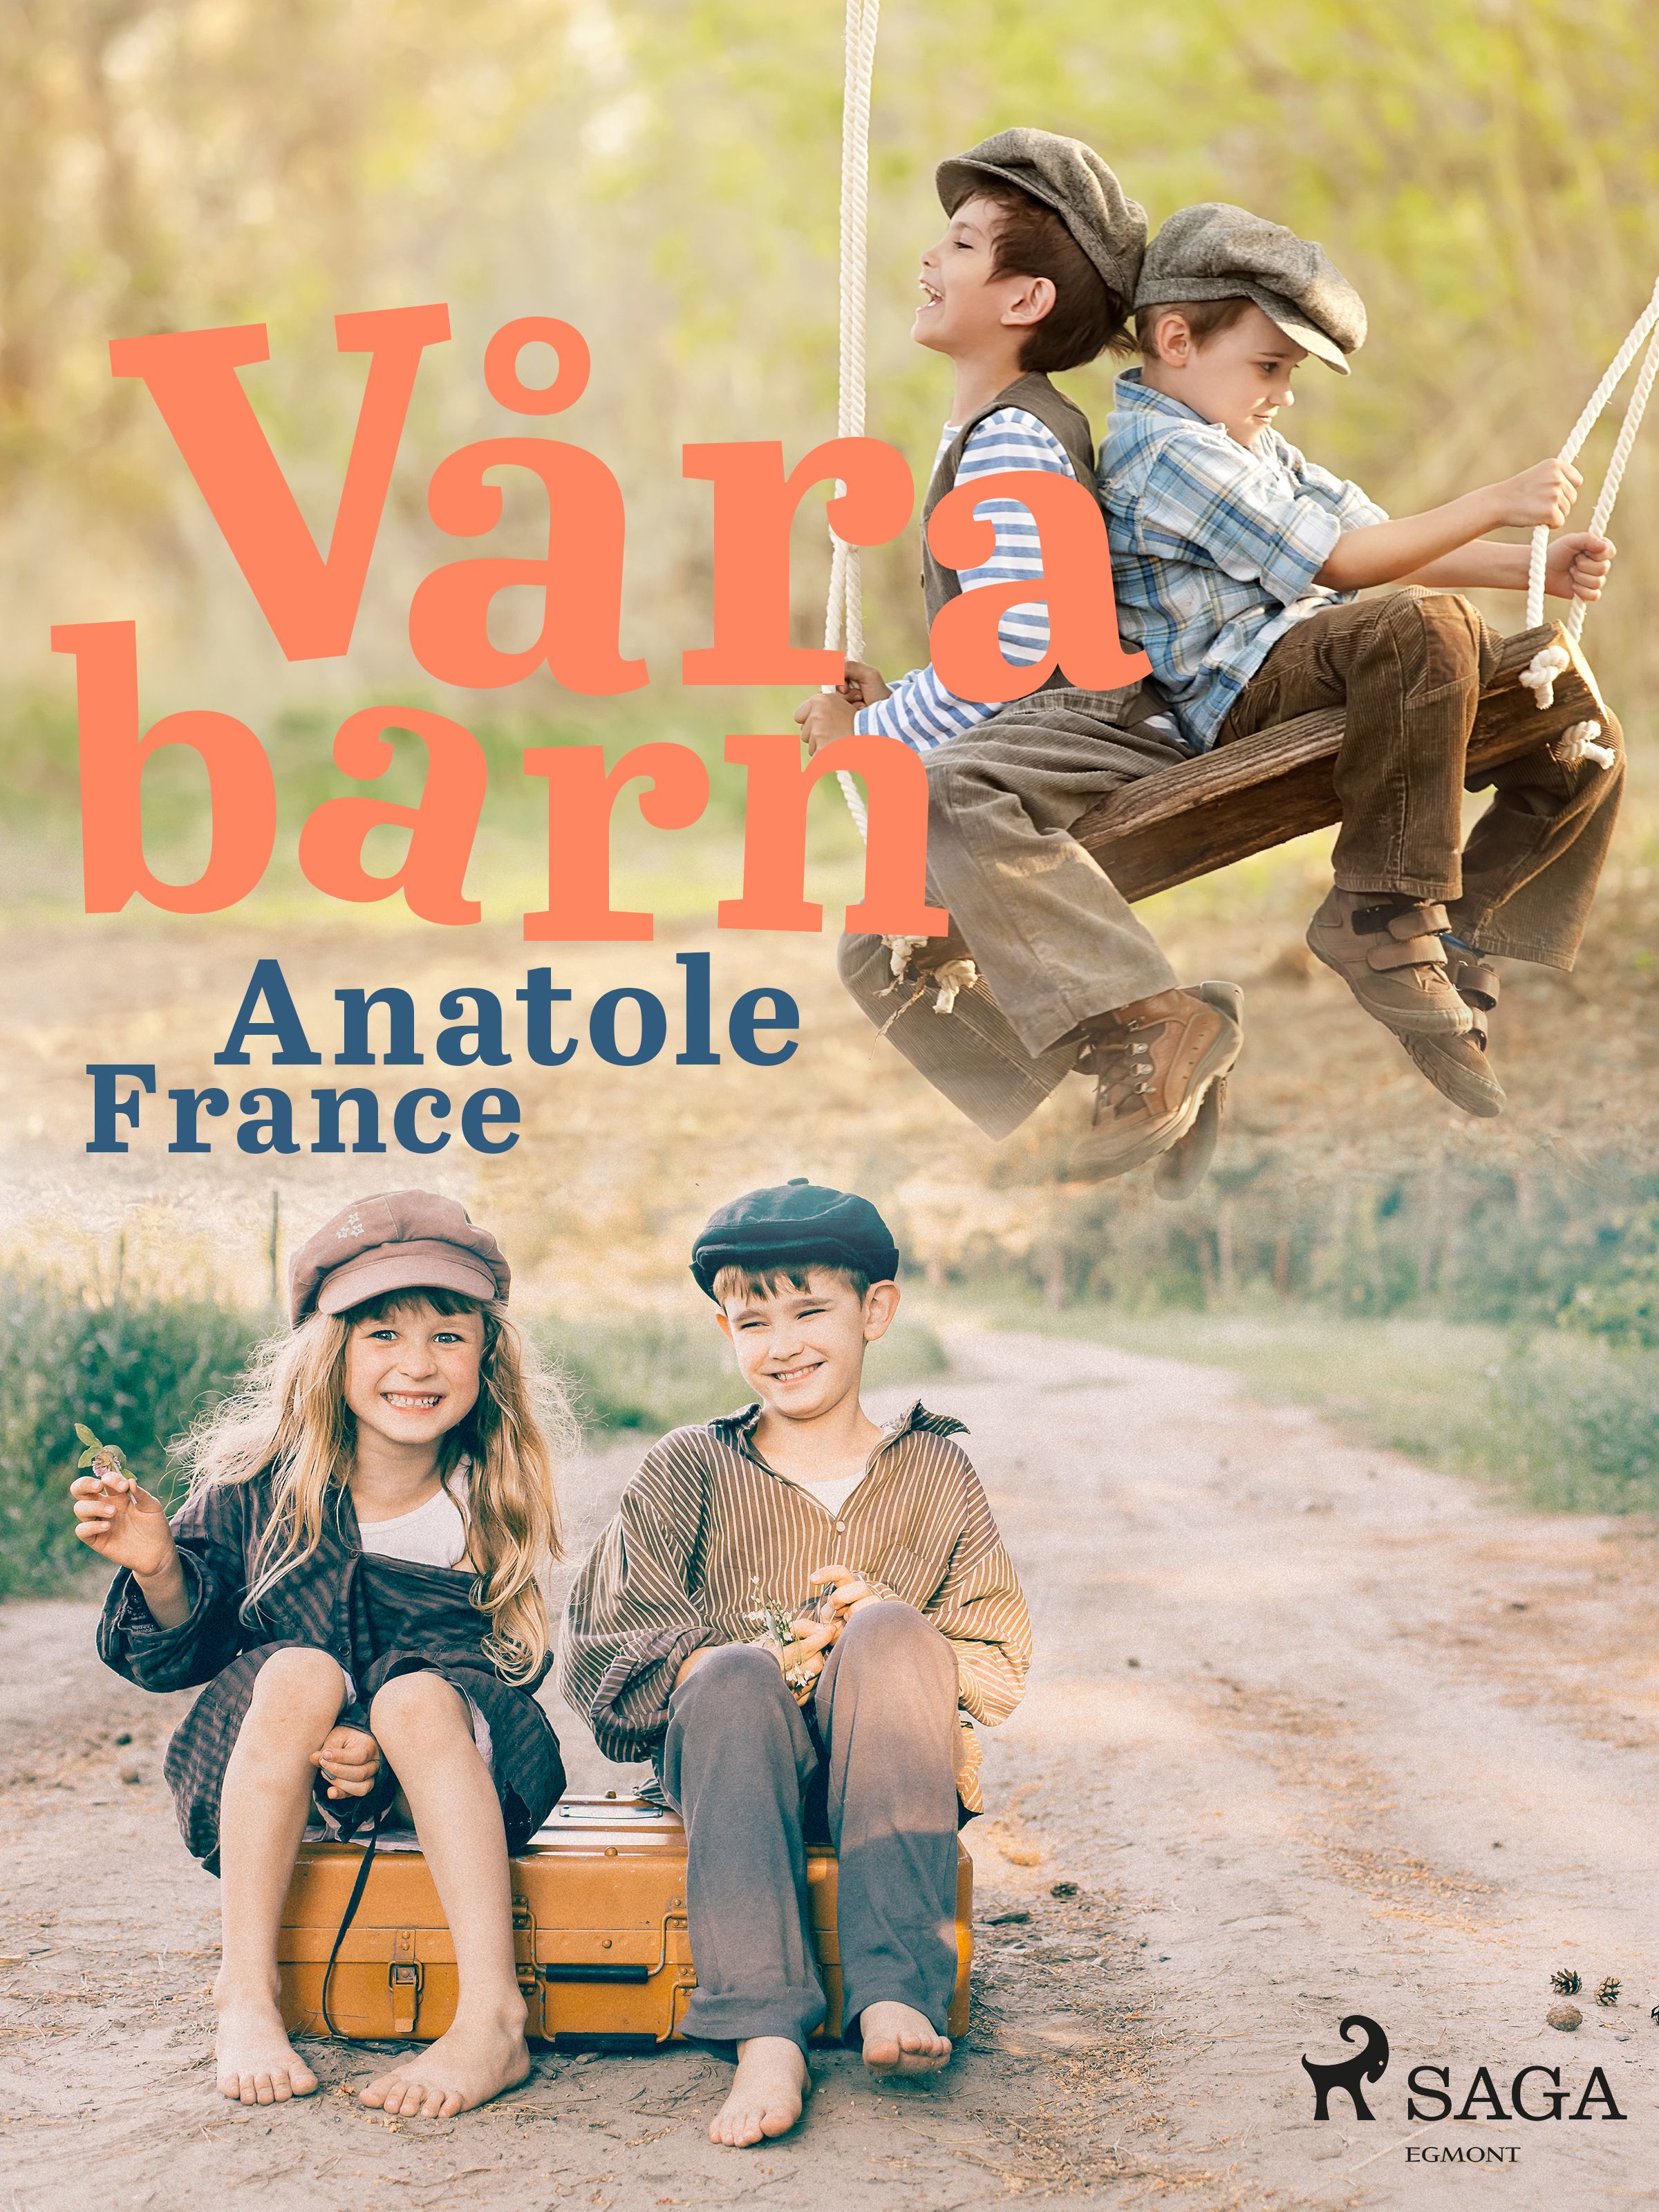 Våra barn, e-bok av Anatole France